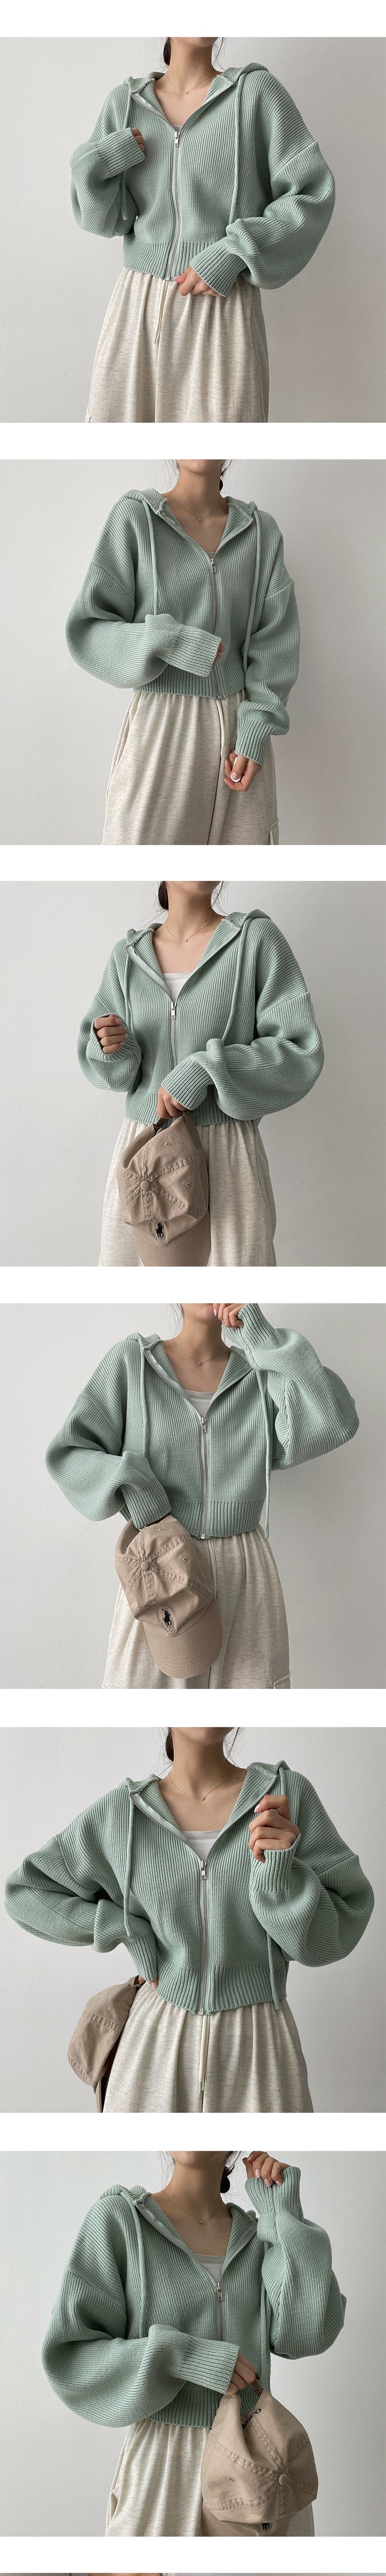 キャンディーニットウェアフードジップアップ / candy knitwear hooded zip-up